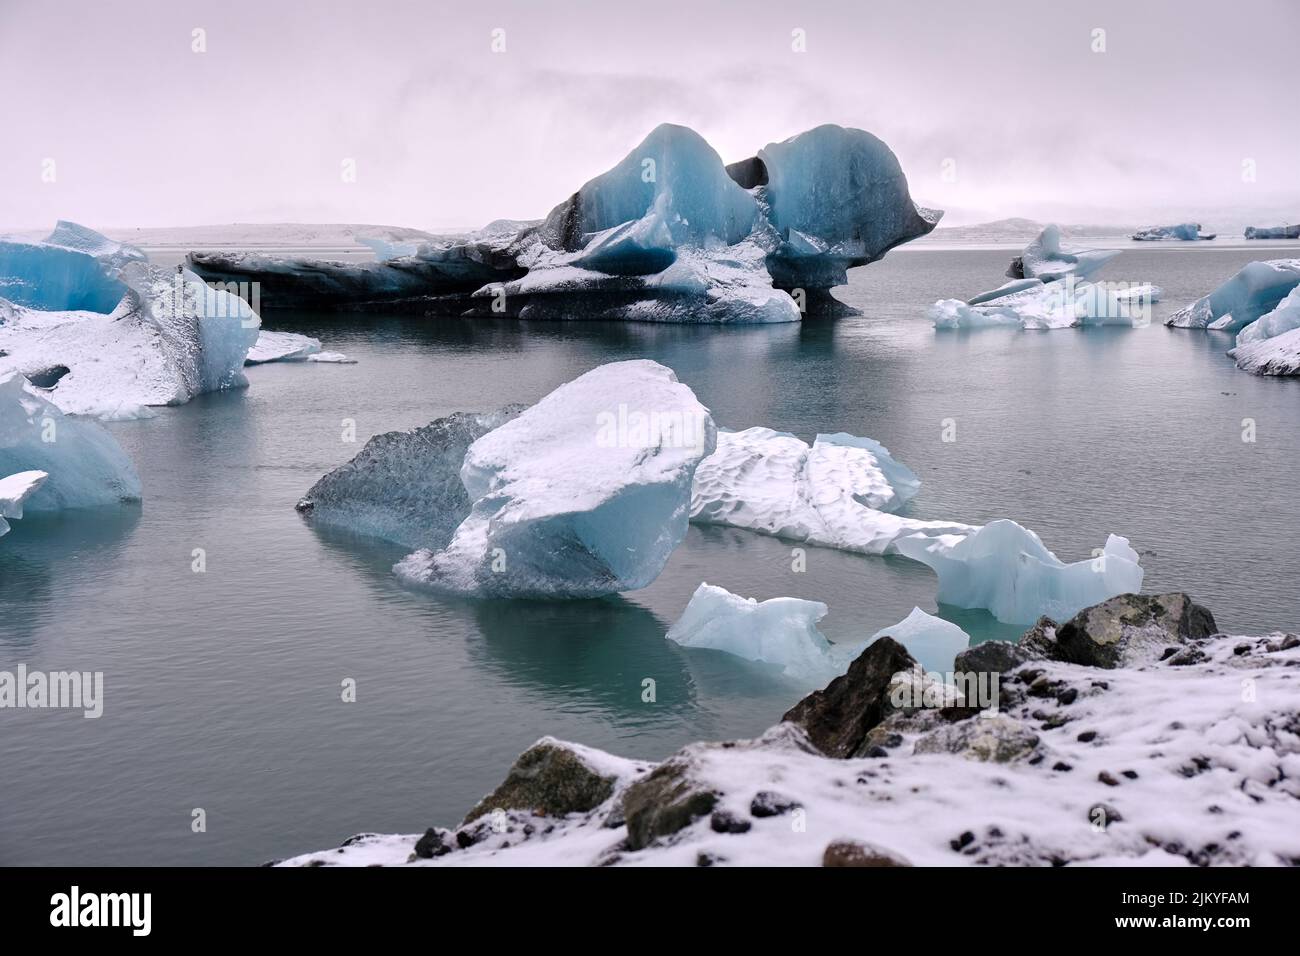 Grandi iceberg blu e nero galleggiano sul Lago del Ghiacciaio Fjallsarlon, Islanda. Foto Stock